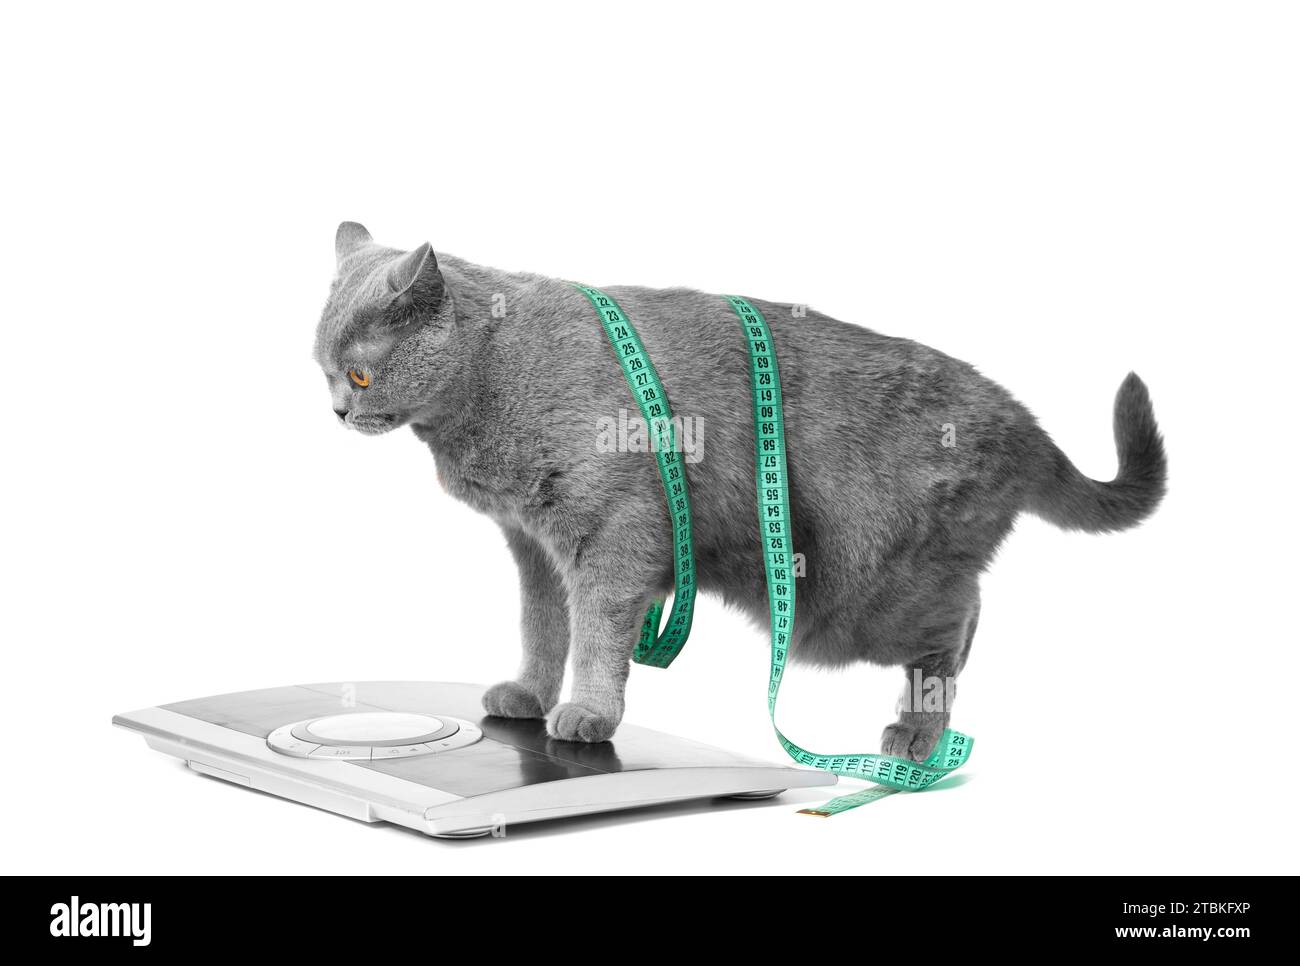 Un chat bleu shorthair britannique se tient sur une échelle sur un fond blanc, enveloppé dans un ruban à mesurer. Concept de contrôle du poids, perte de poids, régime alimentaire. Banque D'Images